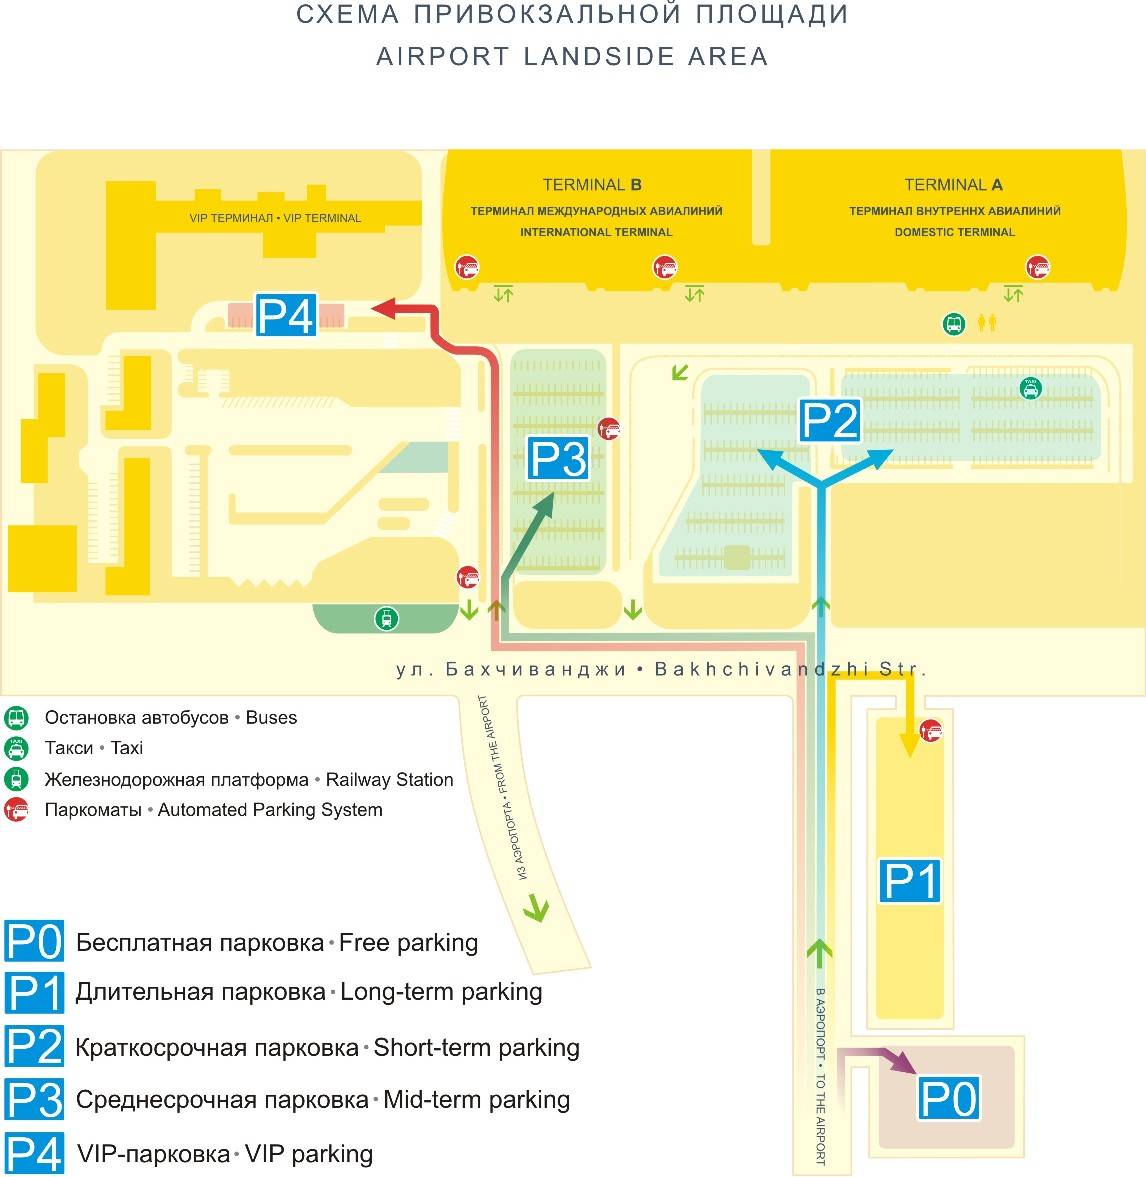 Аэропорт кольцово: контакты, онлайн табло, расписание рейсов, вакансии, как добраться